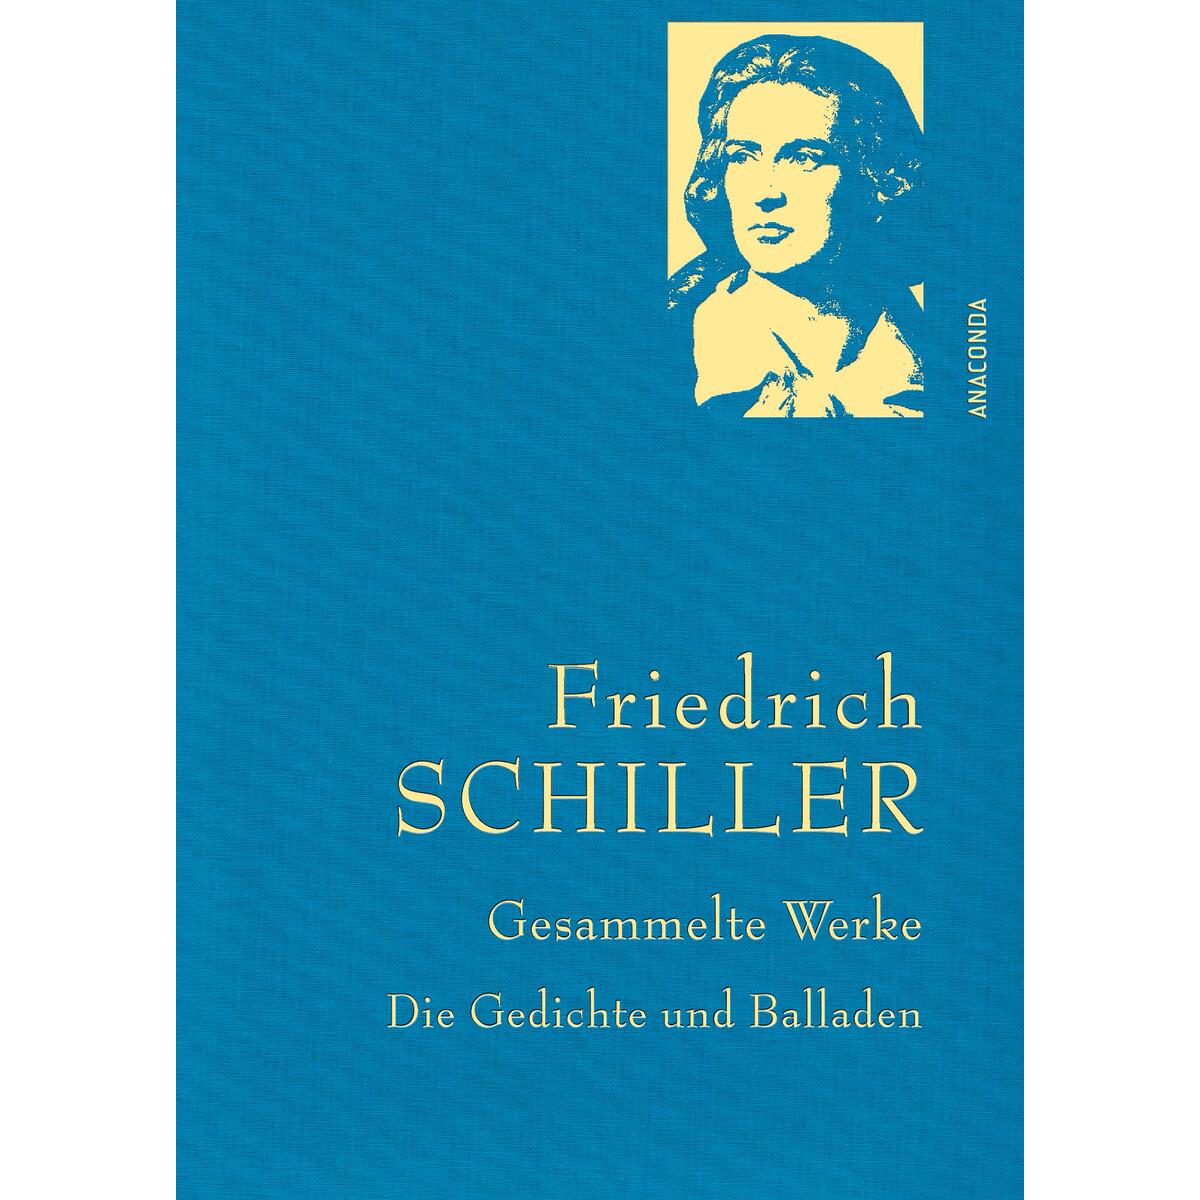 Friedrich Schiller »Gesammelte Werke« von Anaconda Verlag